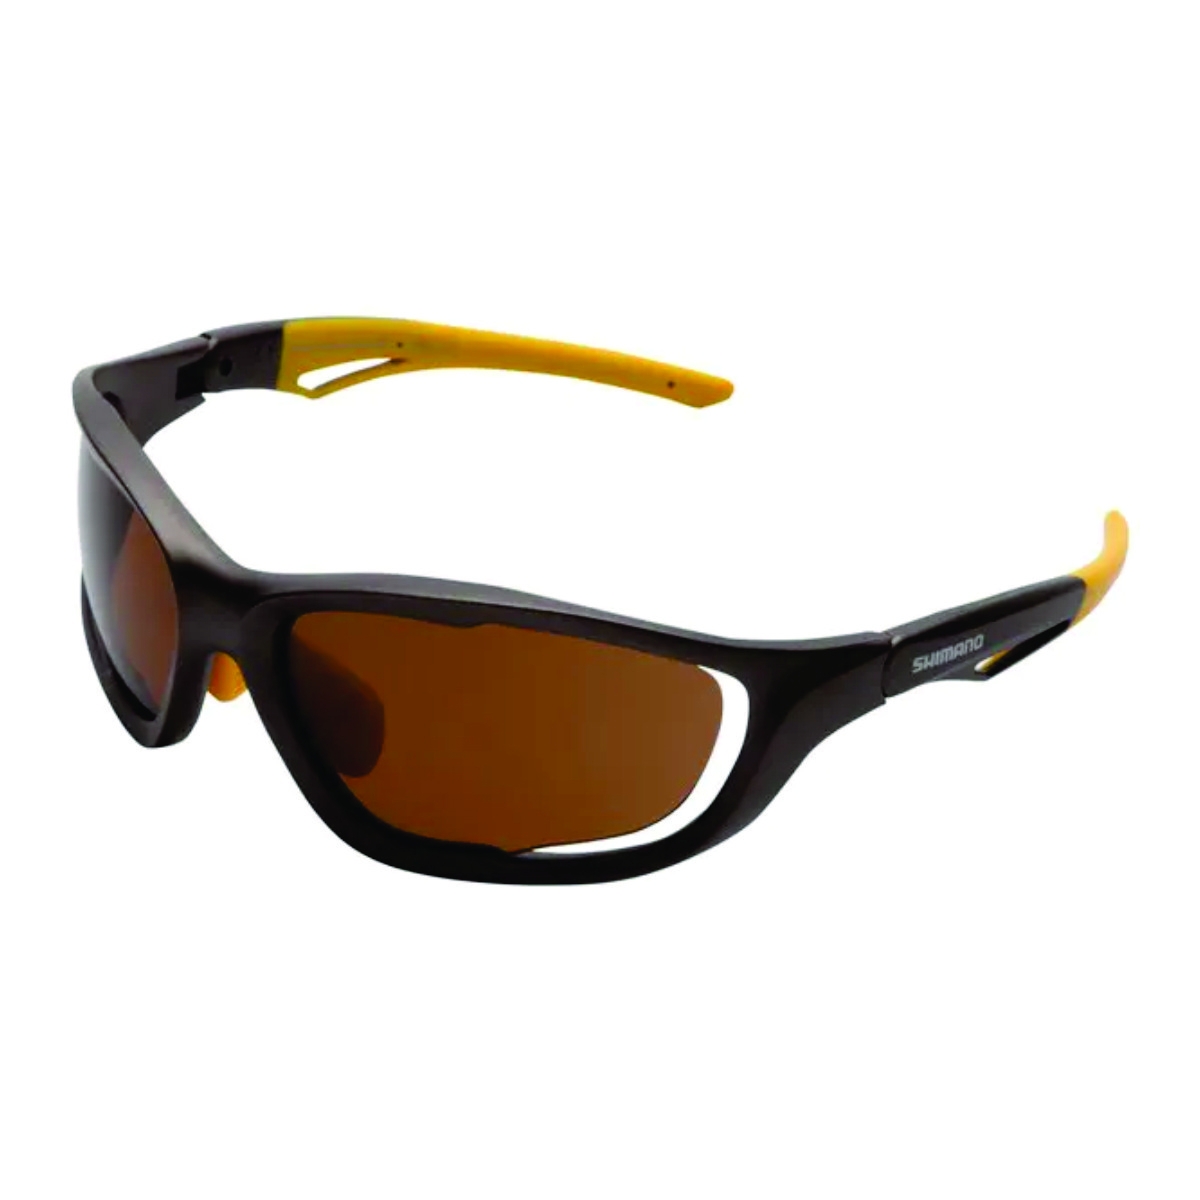 Óculos Shimano Pro S60x Cinza/Amarelo